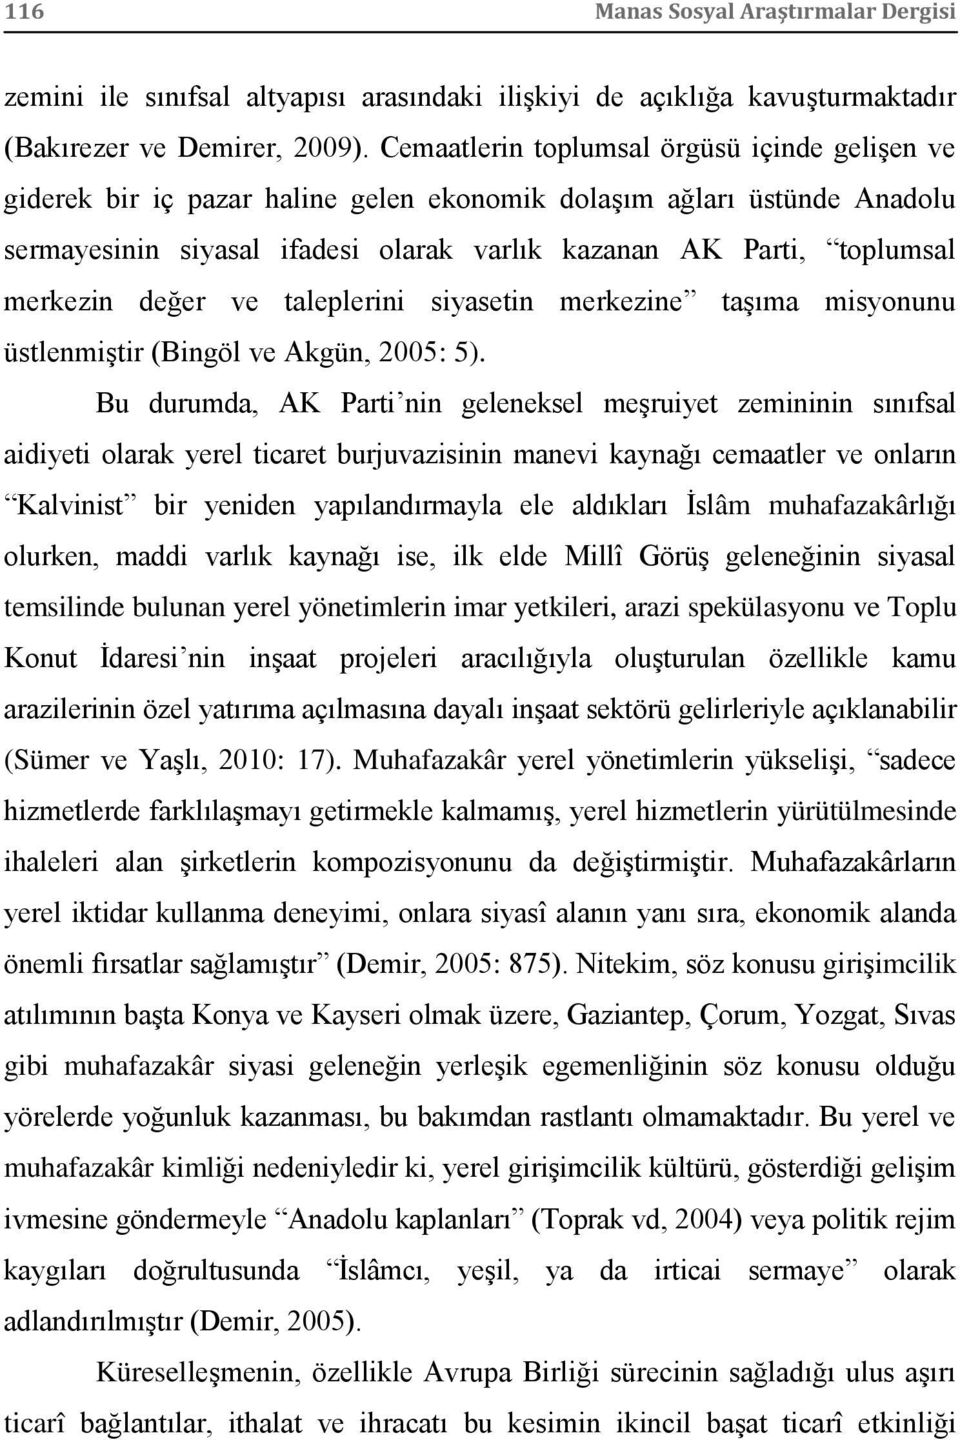 merkezin değer ve taleplerini siyasetin merkezine taşıma misyonunu üstlenmiştir (Bingöl ve Akgün, 2005: 5).